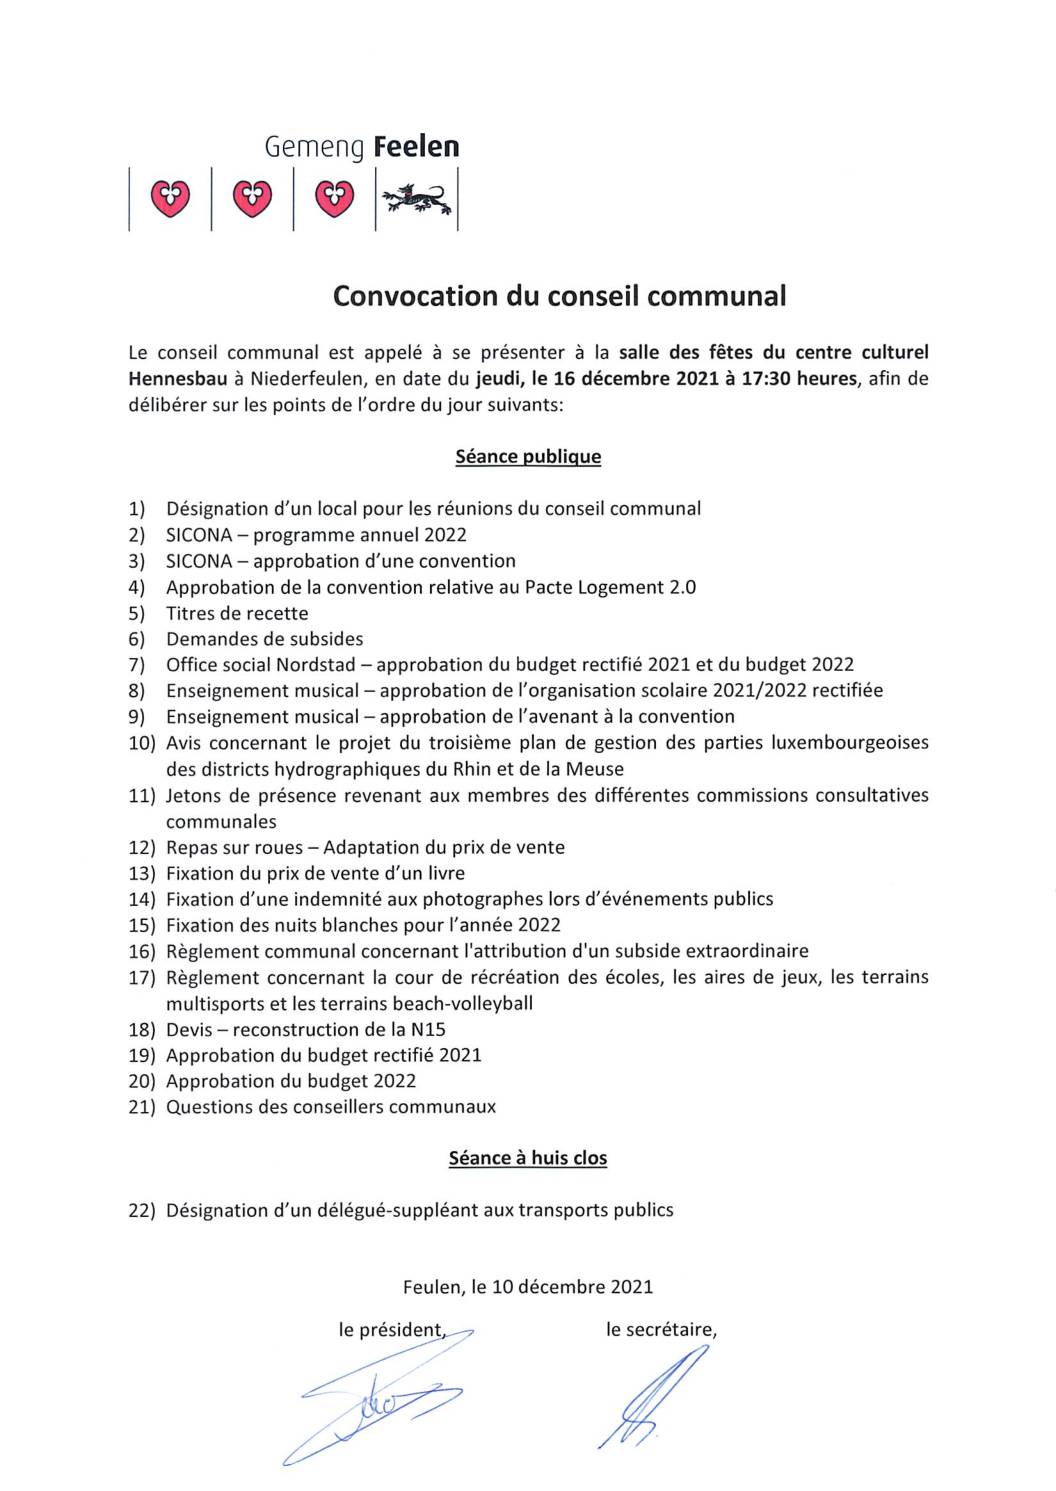 Ordre du jour de la séance du conseil communal du 16 décembre 2021